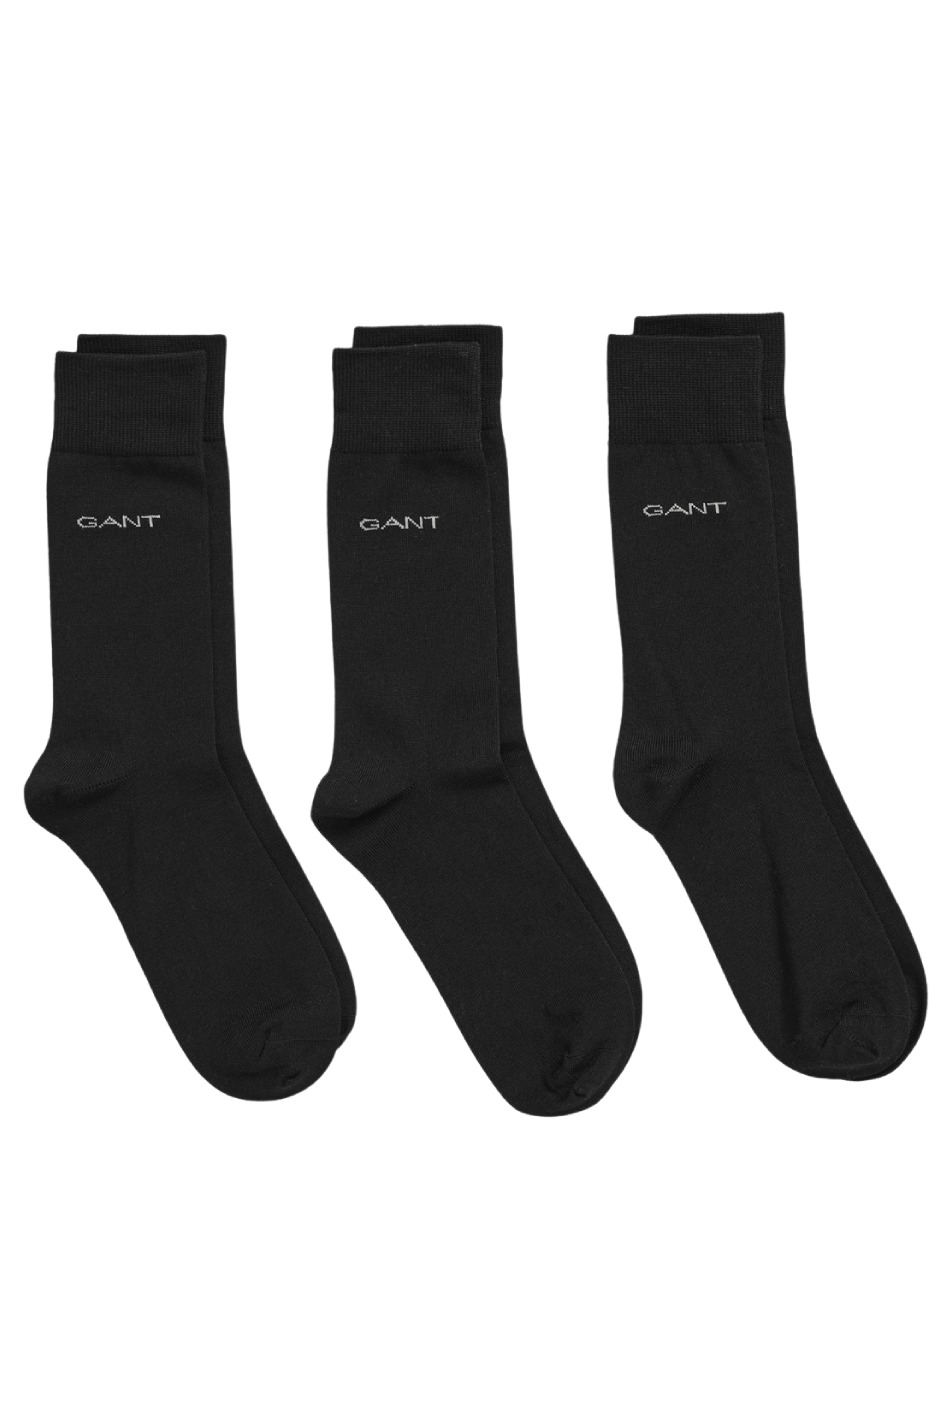 Gant 3 Pack Mercerized Cotton Sock